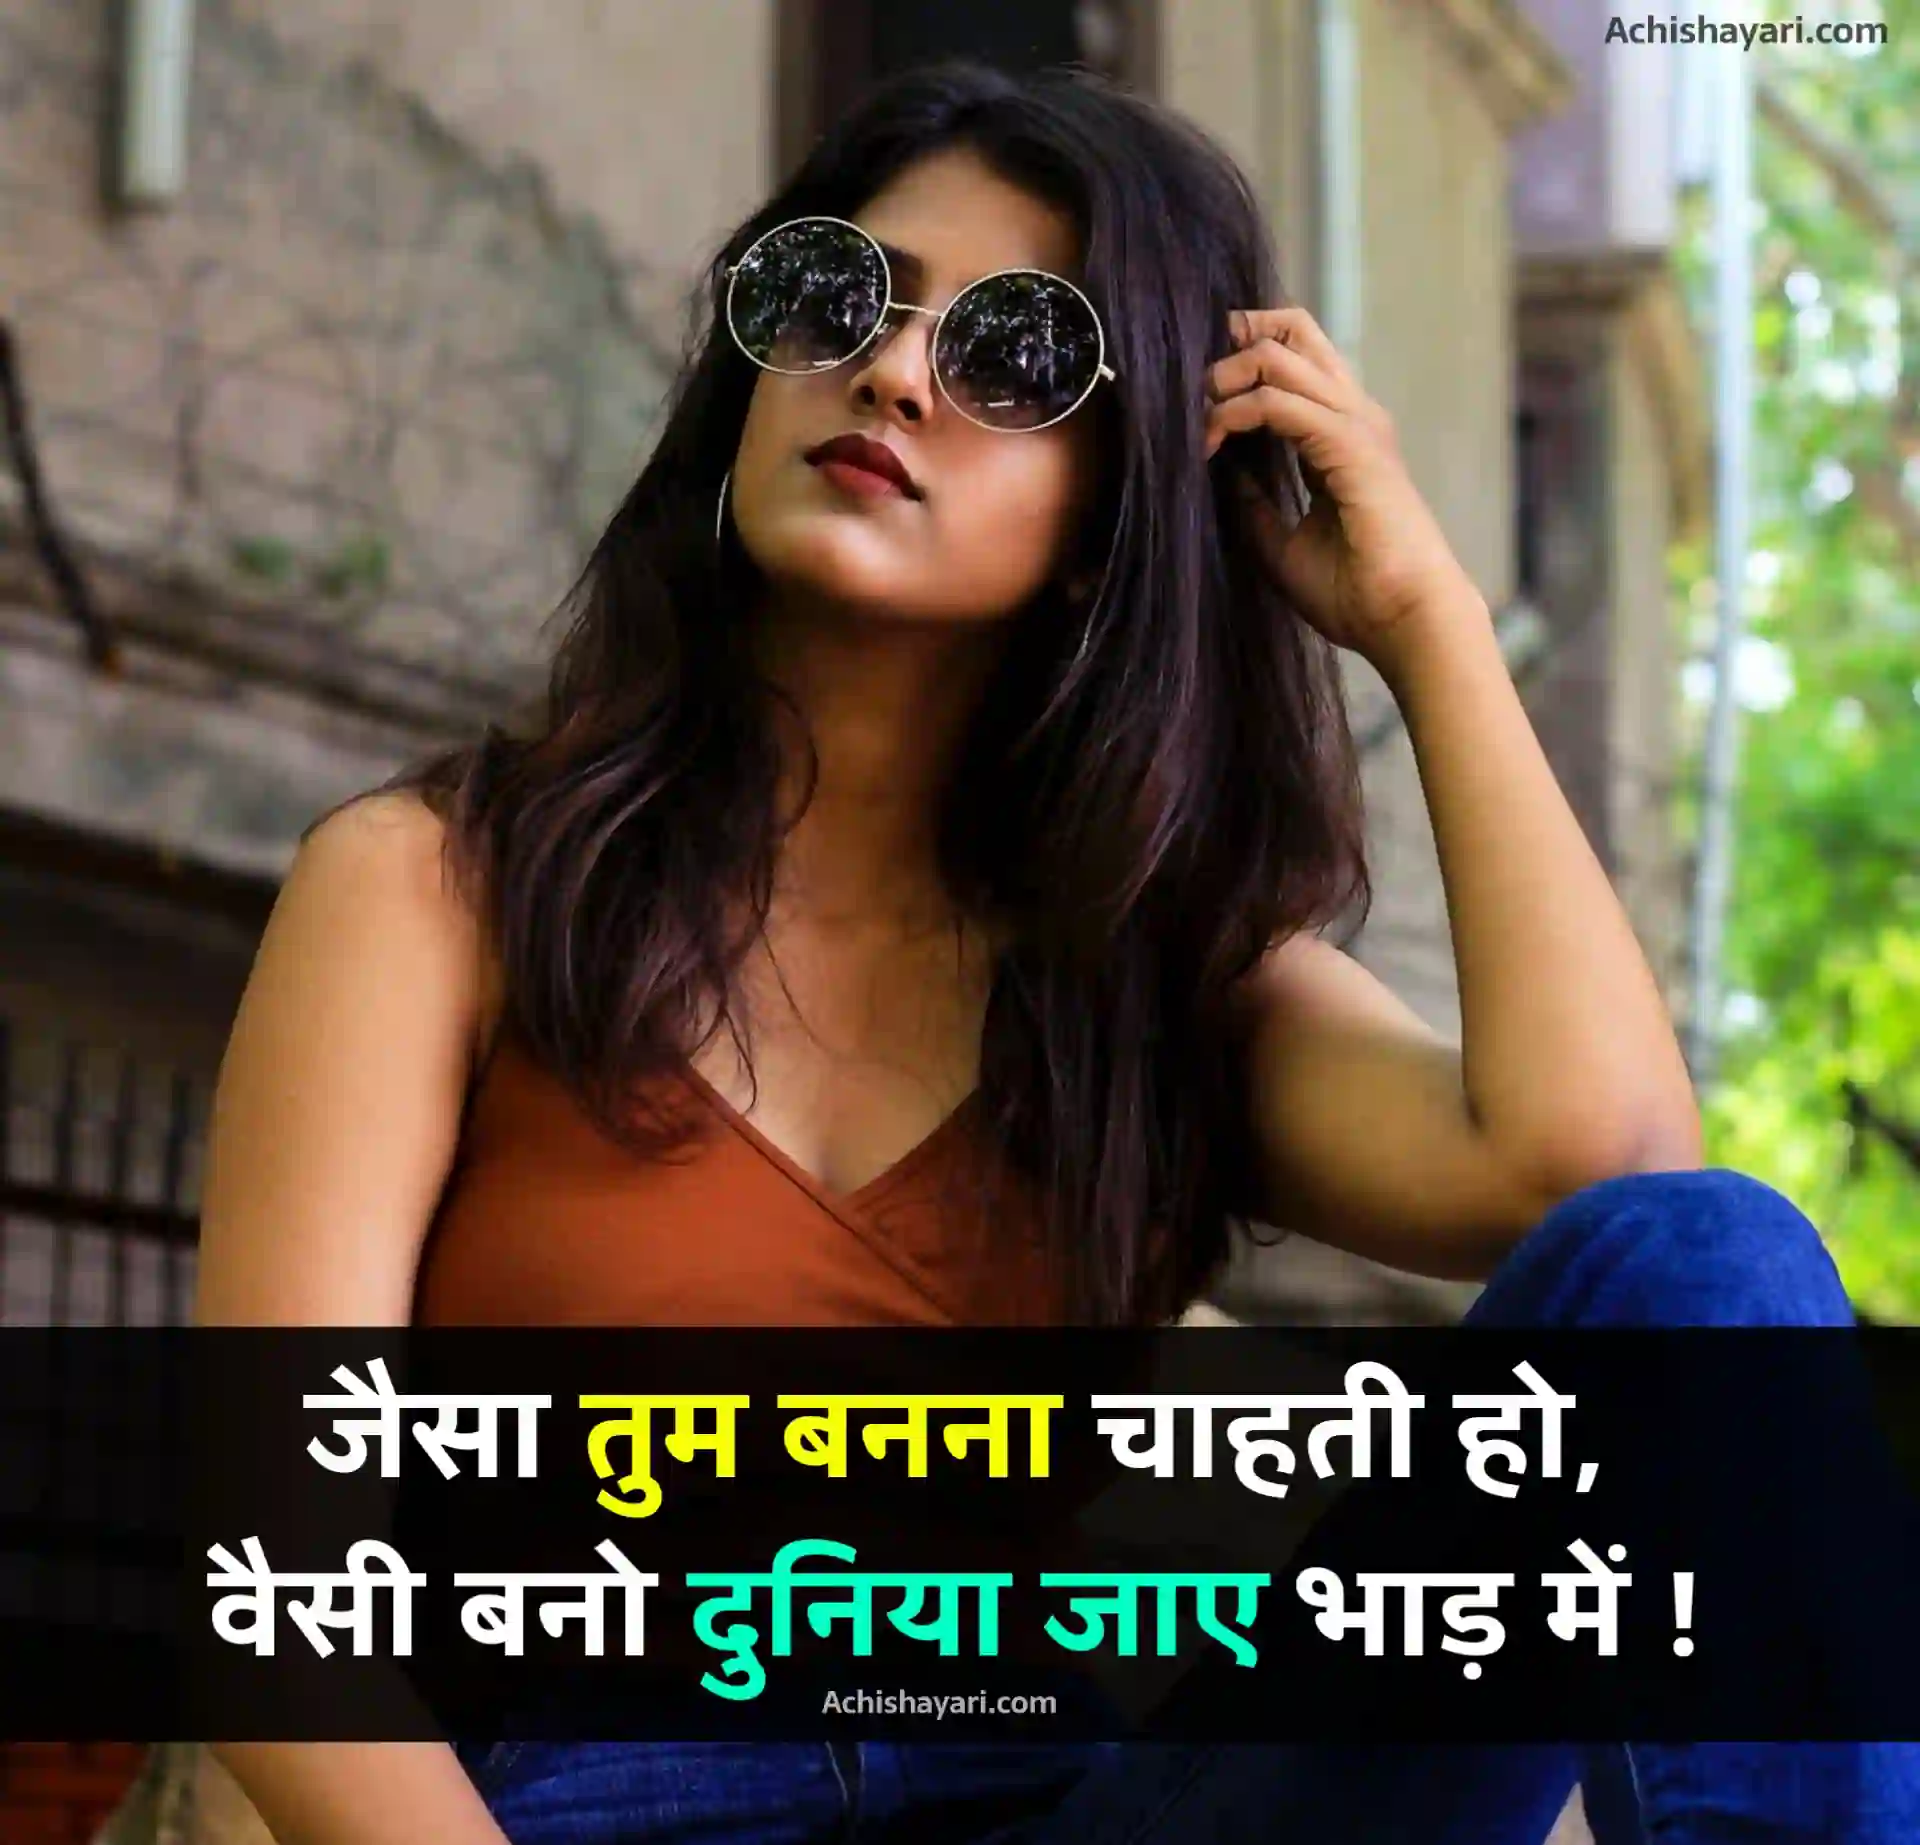 Girl Attitude Status in Hindi HD Image